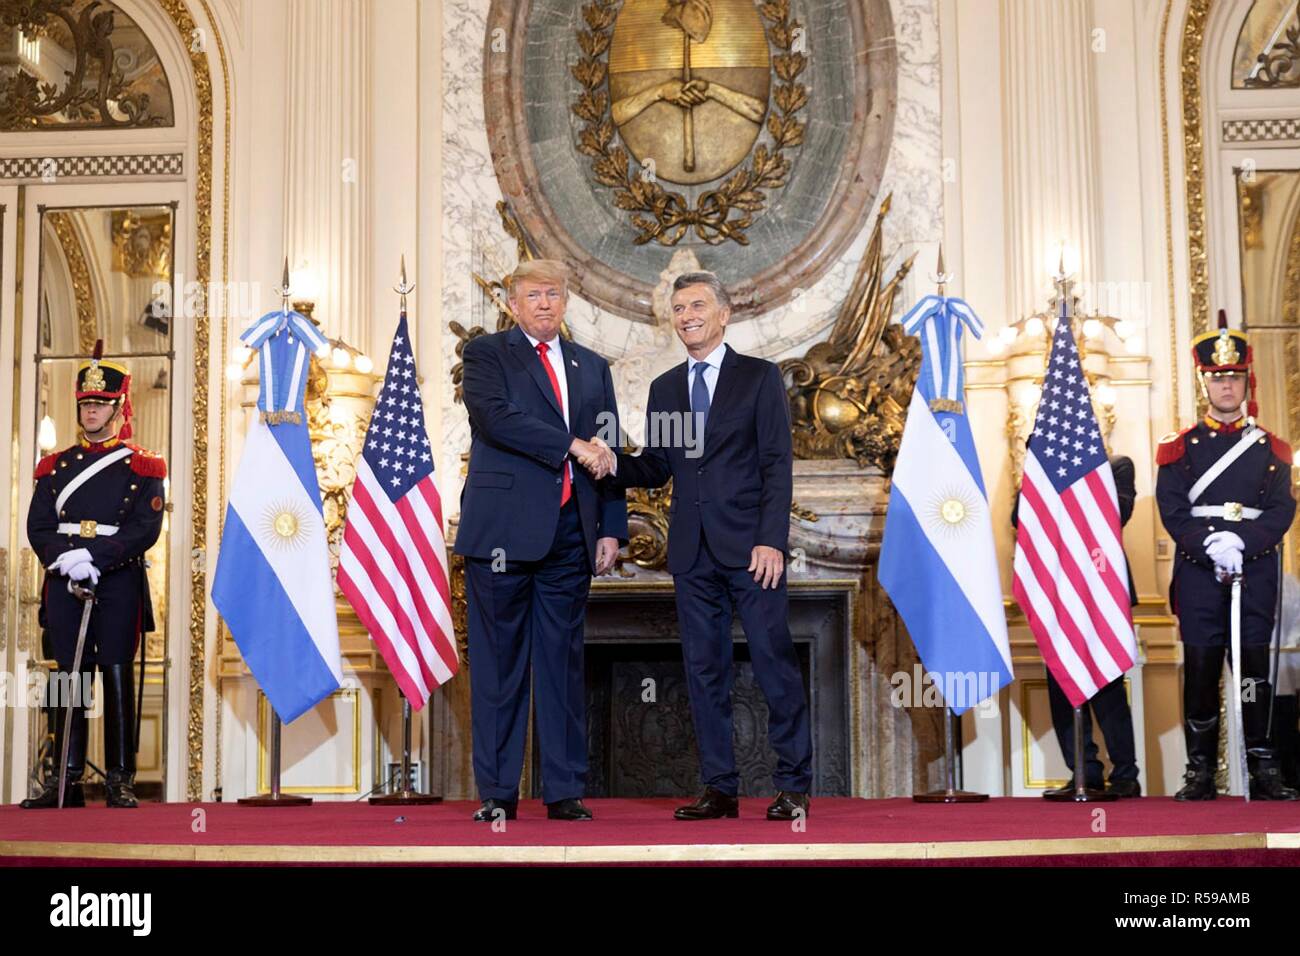 El Presidente de Estados Unidos, Donald Trump se da la mano con el presidente argentino Mauricio Macri, justo antes del inicio de una reunión bilateral al margen de la Cumbre del G20 celebrada en la Casa Rosada, 30 de noviembre de 2018 en Buenos Aires, Argentina. Foto de stock